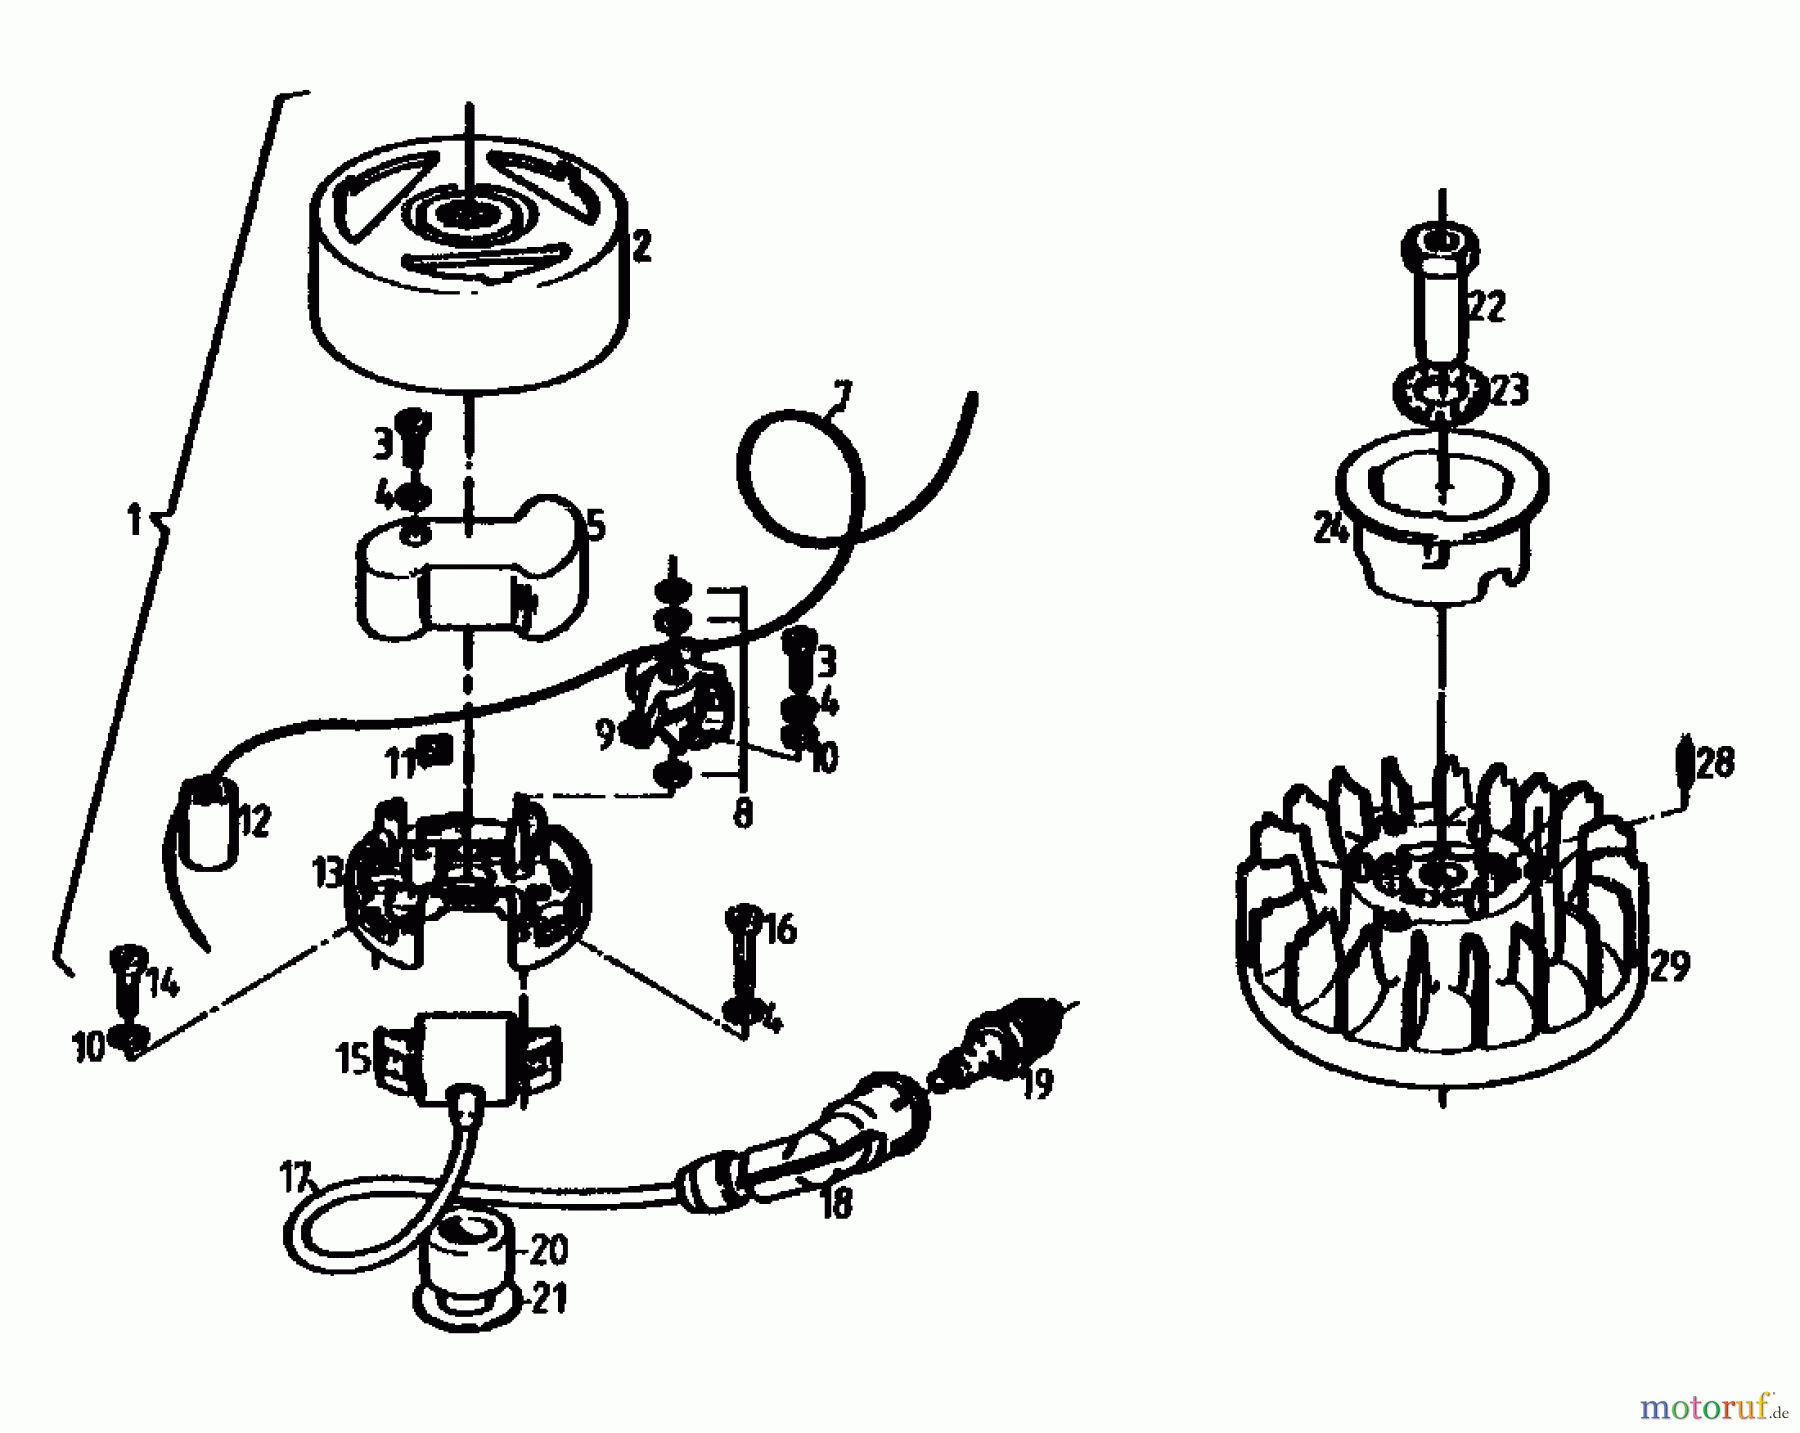  Gutbrod Balkenmäher BM 100-2/G 07507.01  (1990) Gebläsegehäuse, Schwungrad, Starter, Tank, Zündung